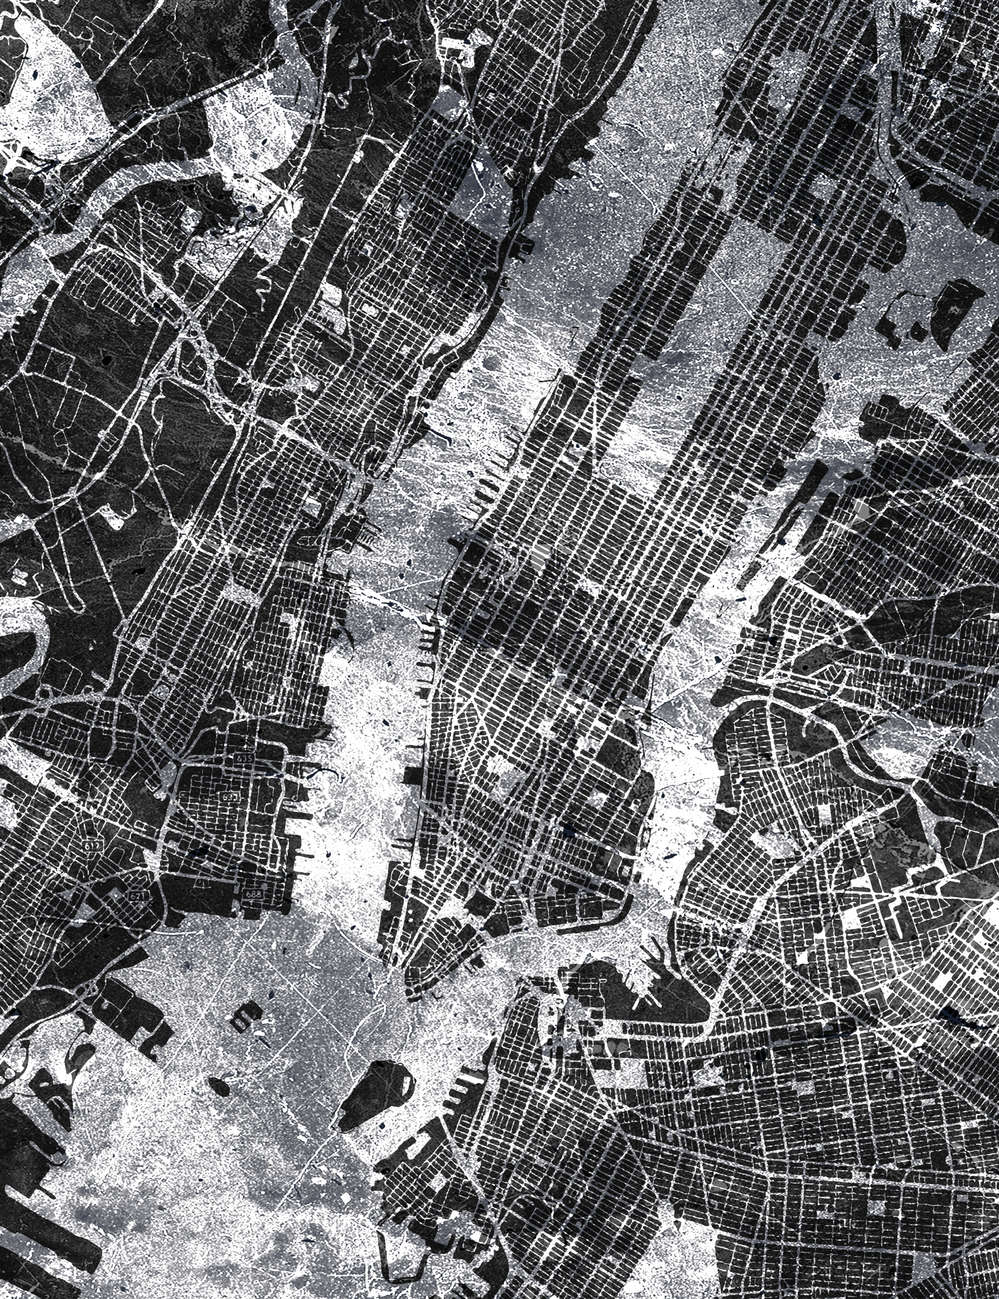             City Map - Schwarz-Weiß Stadtplan im rustikalen Stil
        